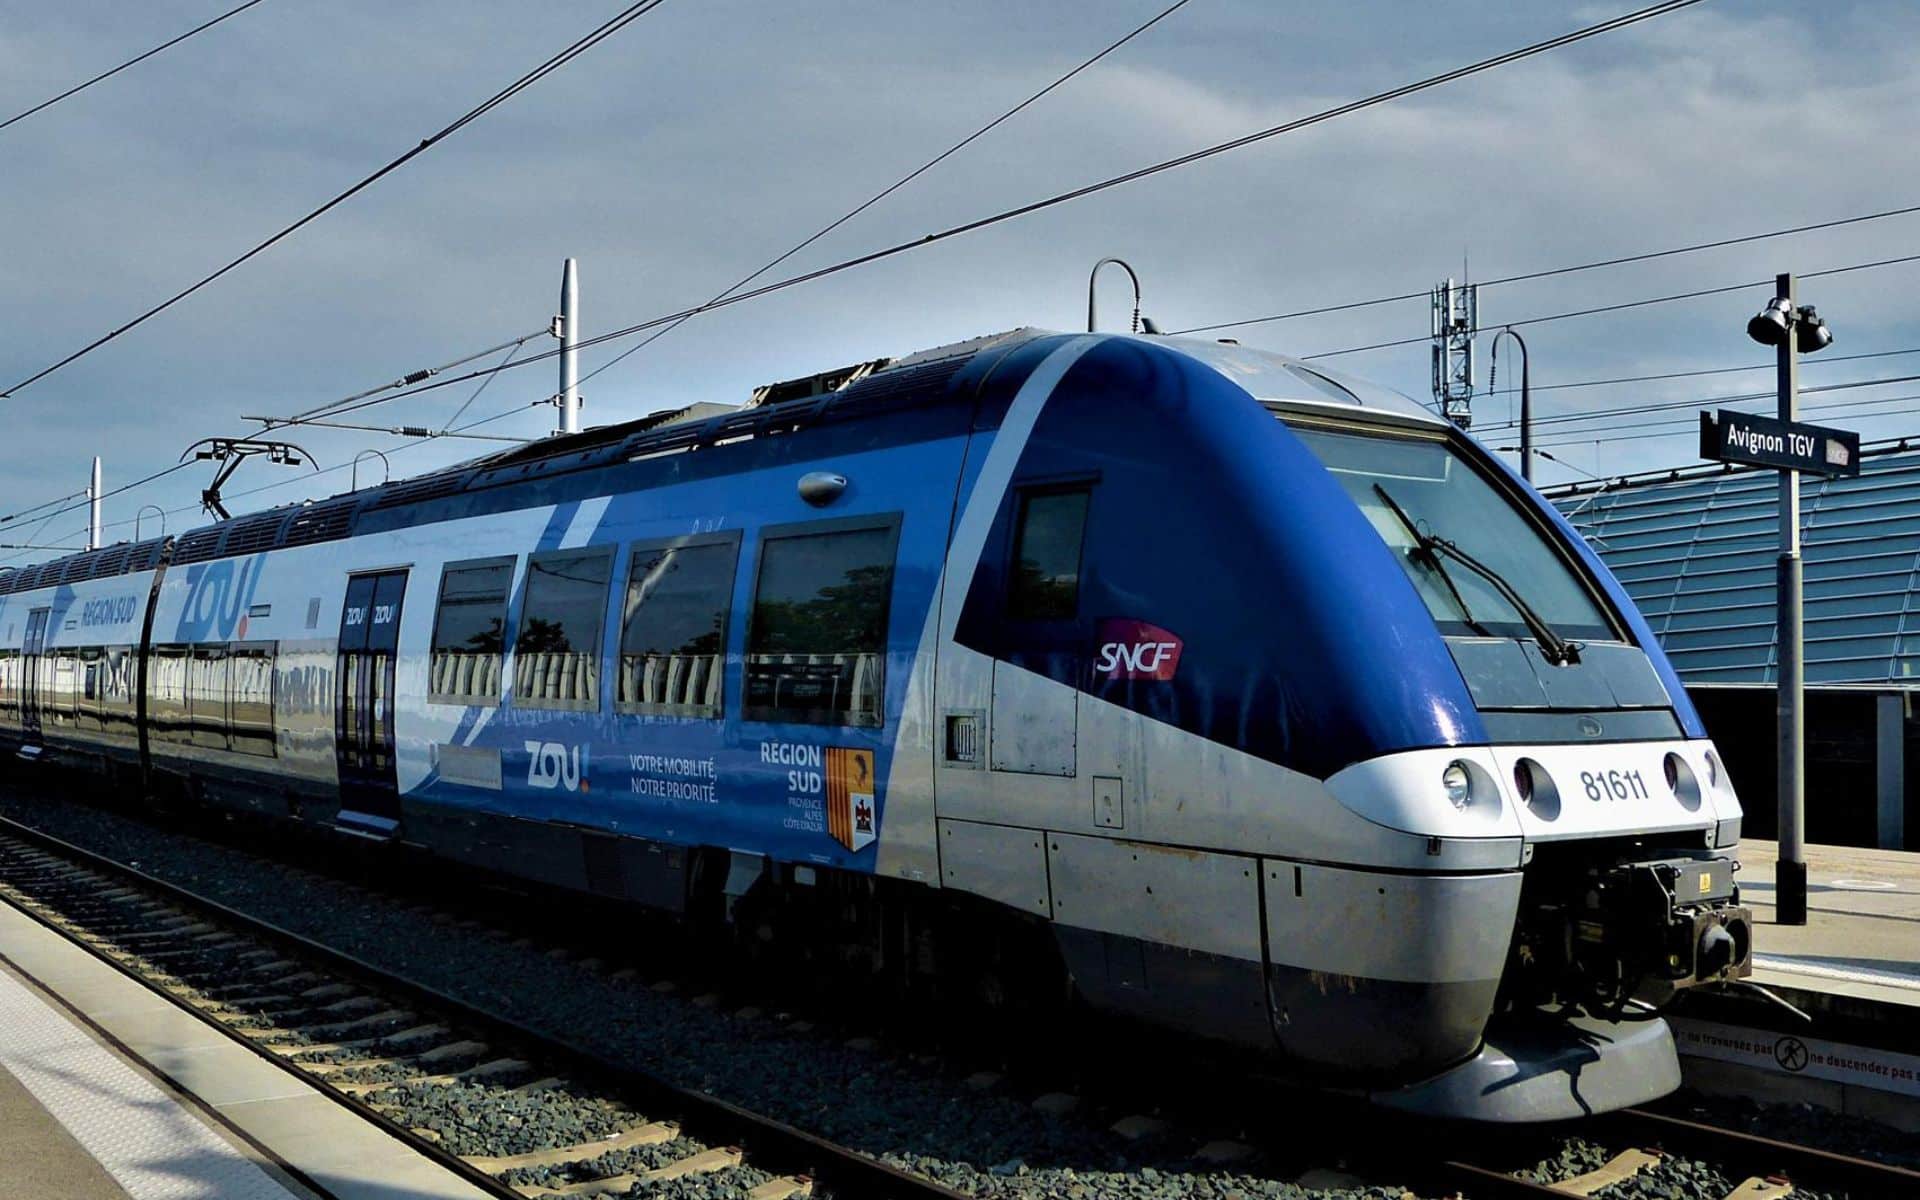 Choc tarifaire à la SNCF : carte Avantage devient moins avantageuse !